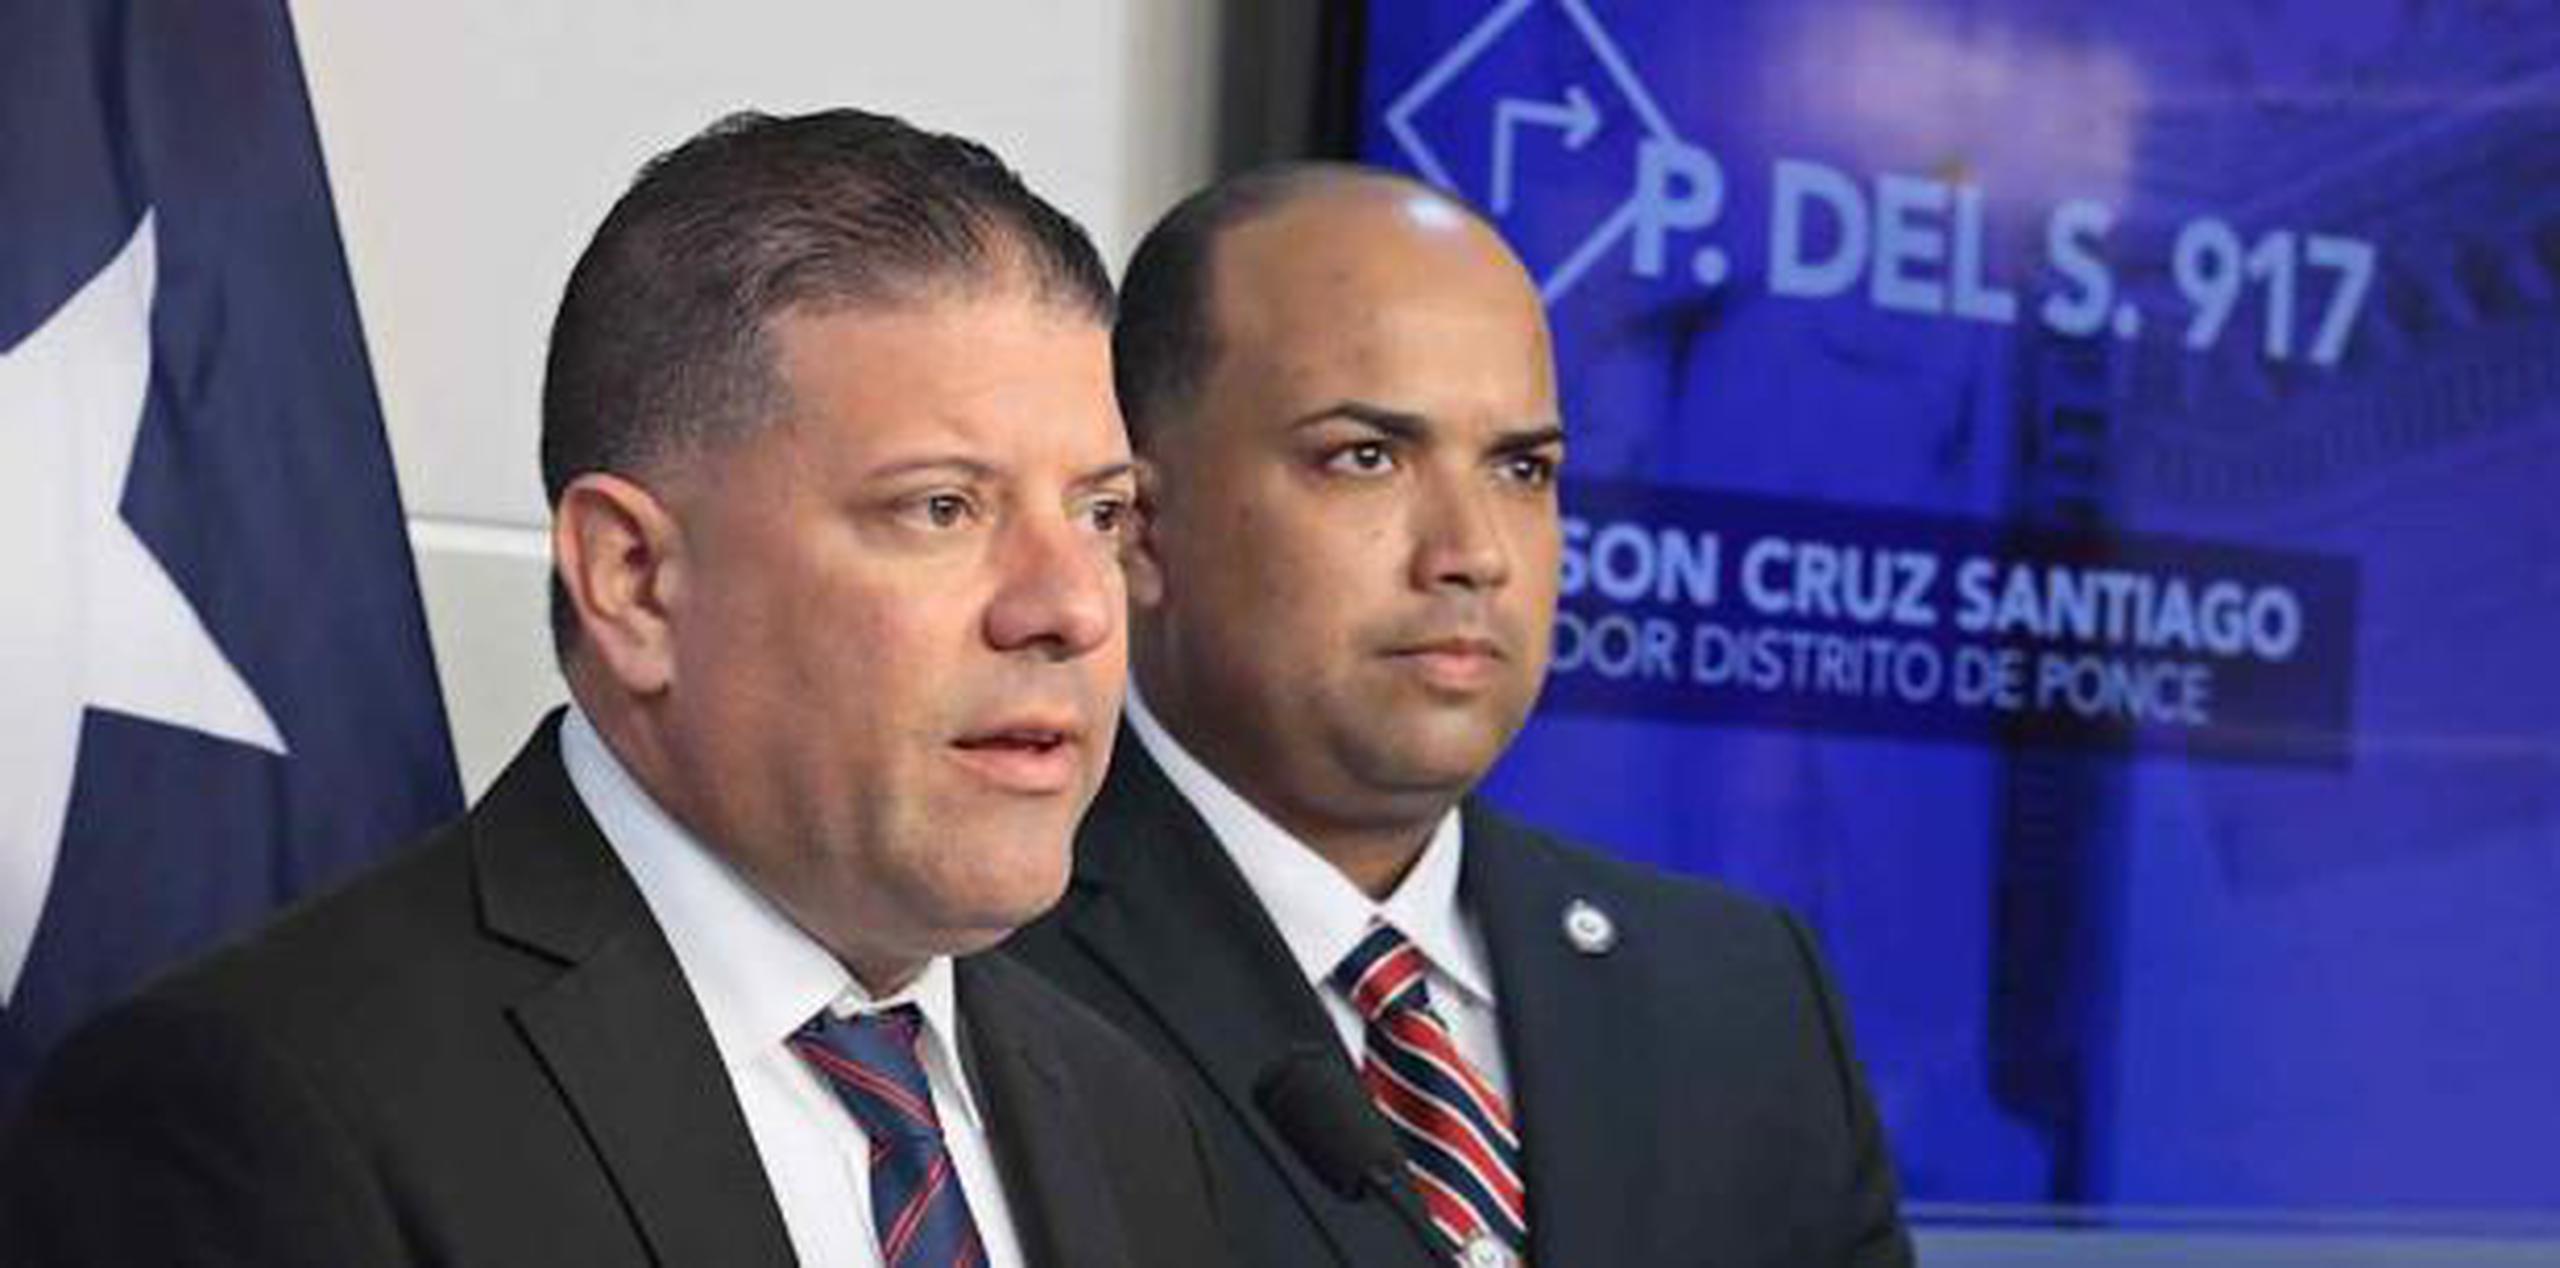 Los senadores Nelson Cruz Santiago (izquierda) y Miguel Laureano Correa. (Suministrada)